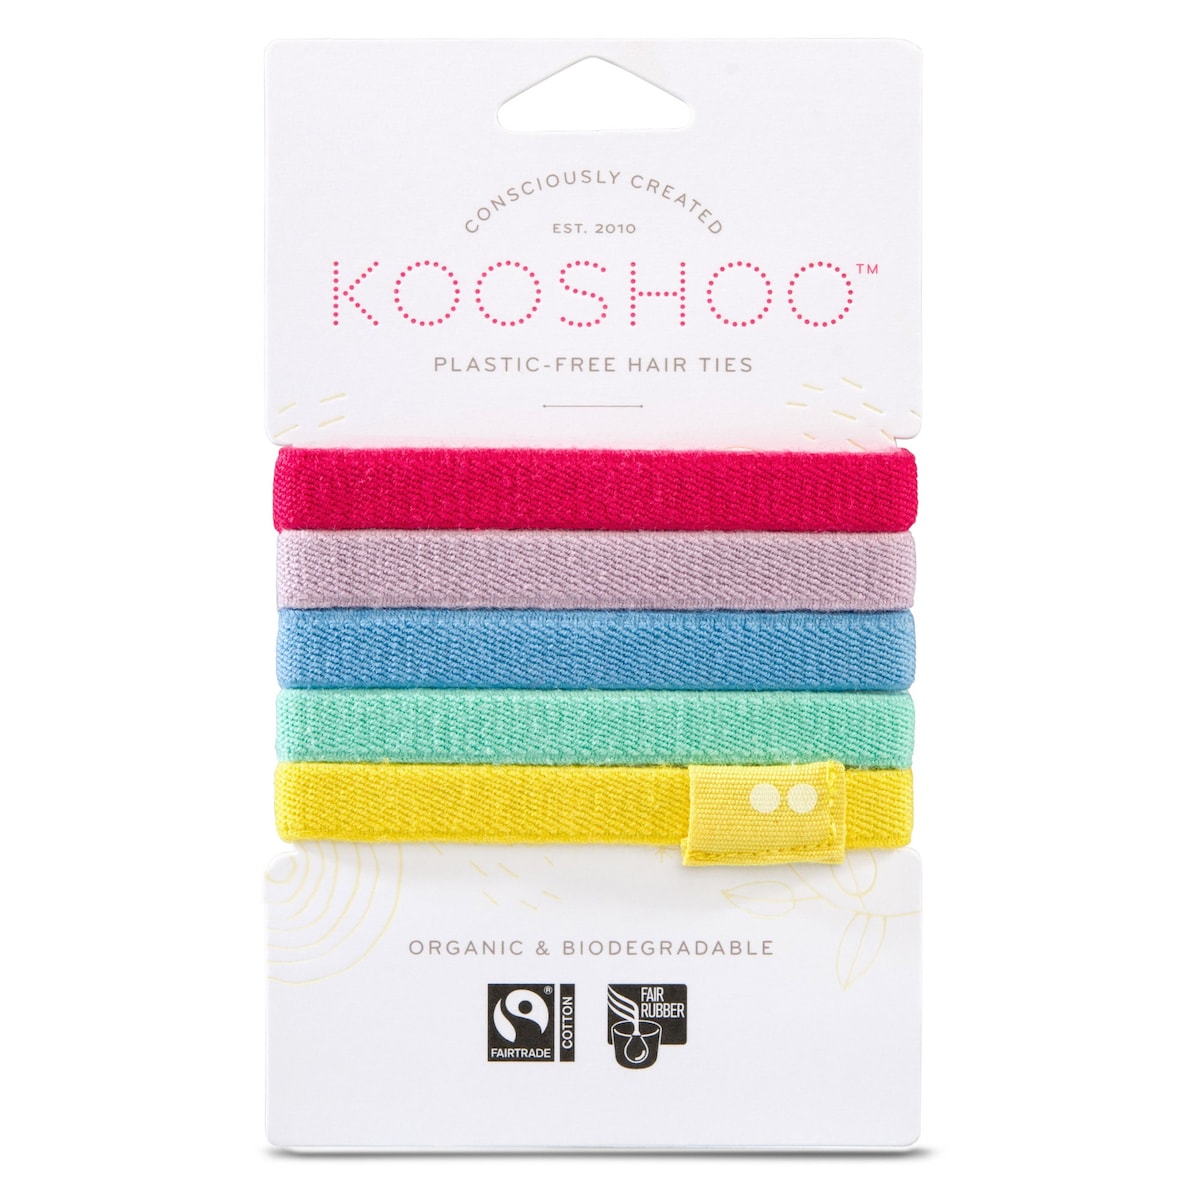 Kooshoo Plastic-Free Hair Ties Rainbow 5 Pack